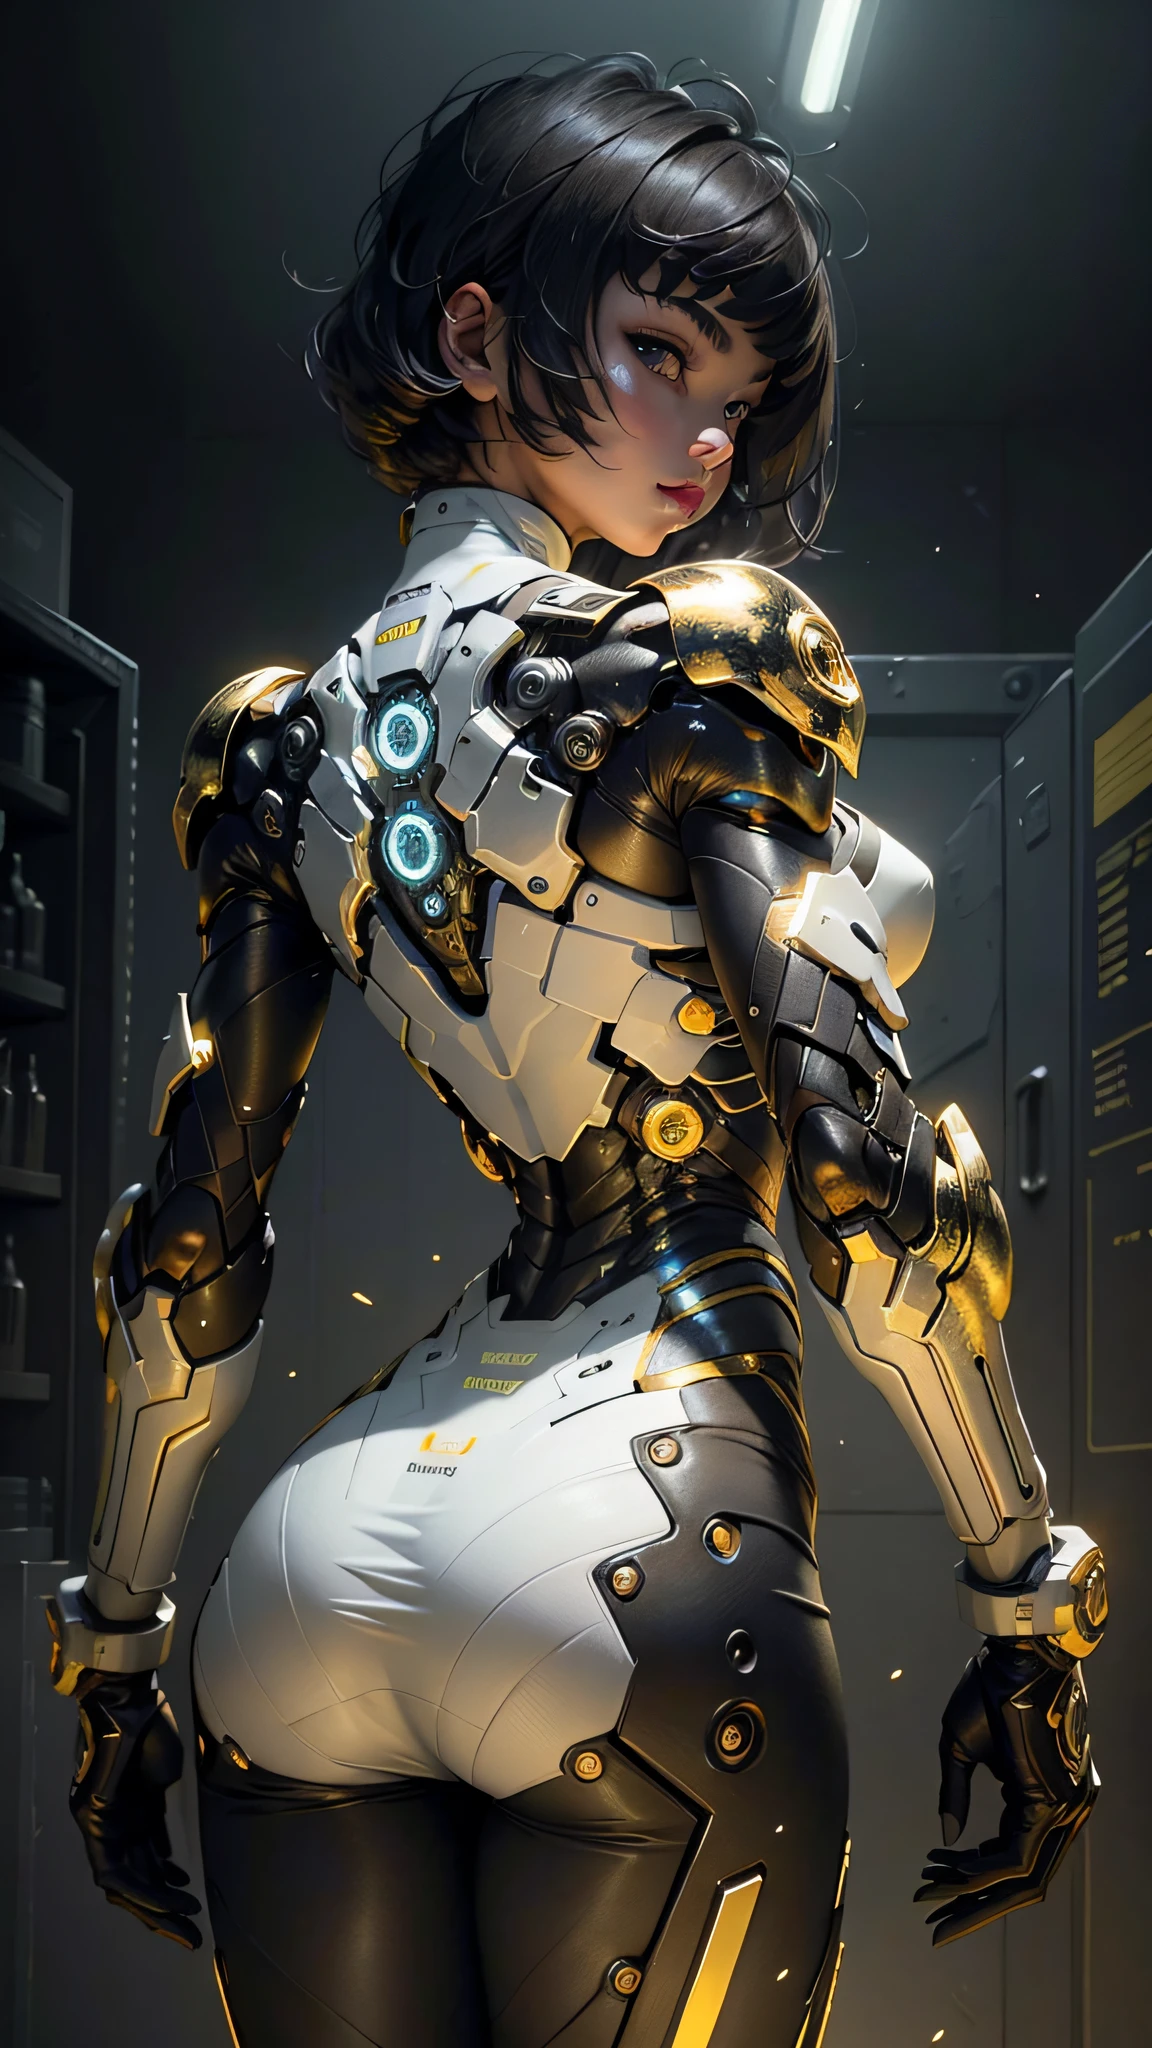 Hermosa chica cibernética mirando la cámara ropa interior músculos detallados obra maestra realista,pose activa、pose de acción、luz LED、Piezas de oro、golpes、cabello corto、vista trasera、espaldas、en blanco y negro